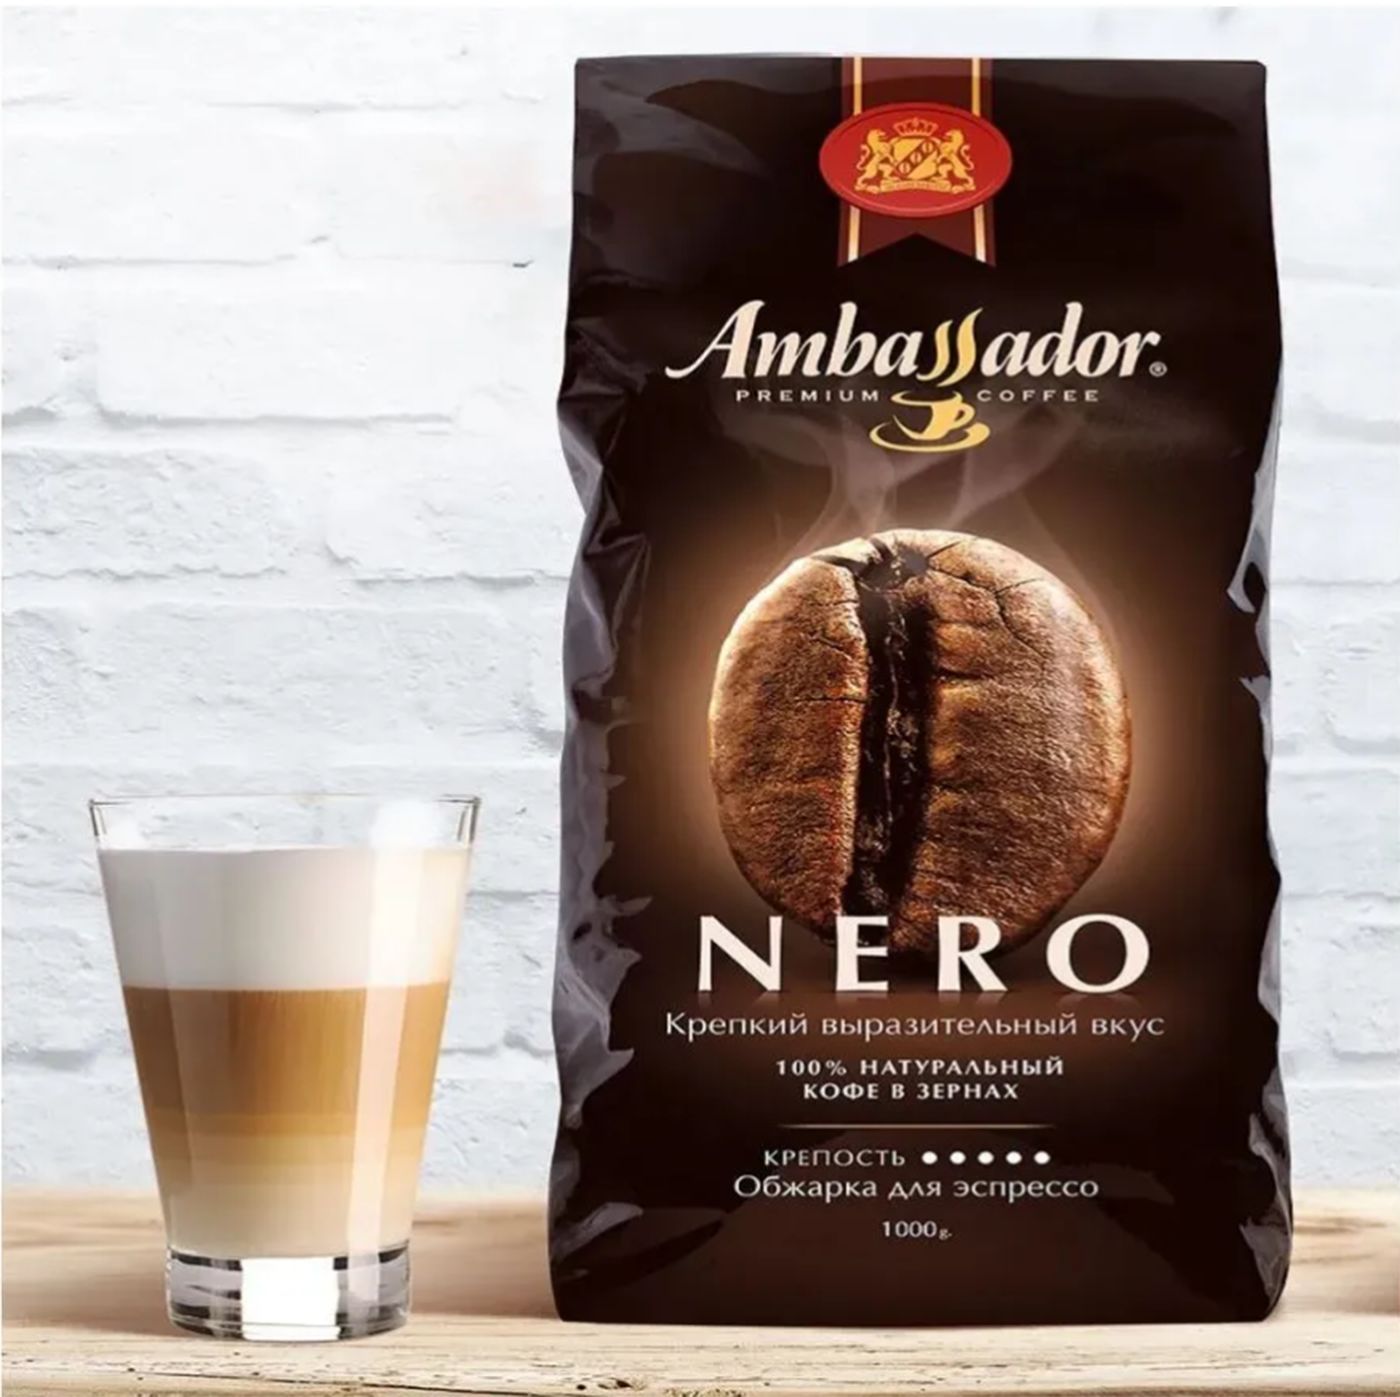 Кофе ambassador nero. Кофе Ambassador Nero в зернах 1 кг. Кофе Nero зерновой 1000г. Кофе в магните в зернах Амбассадор Неро.